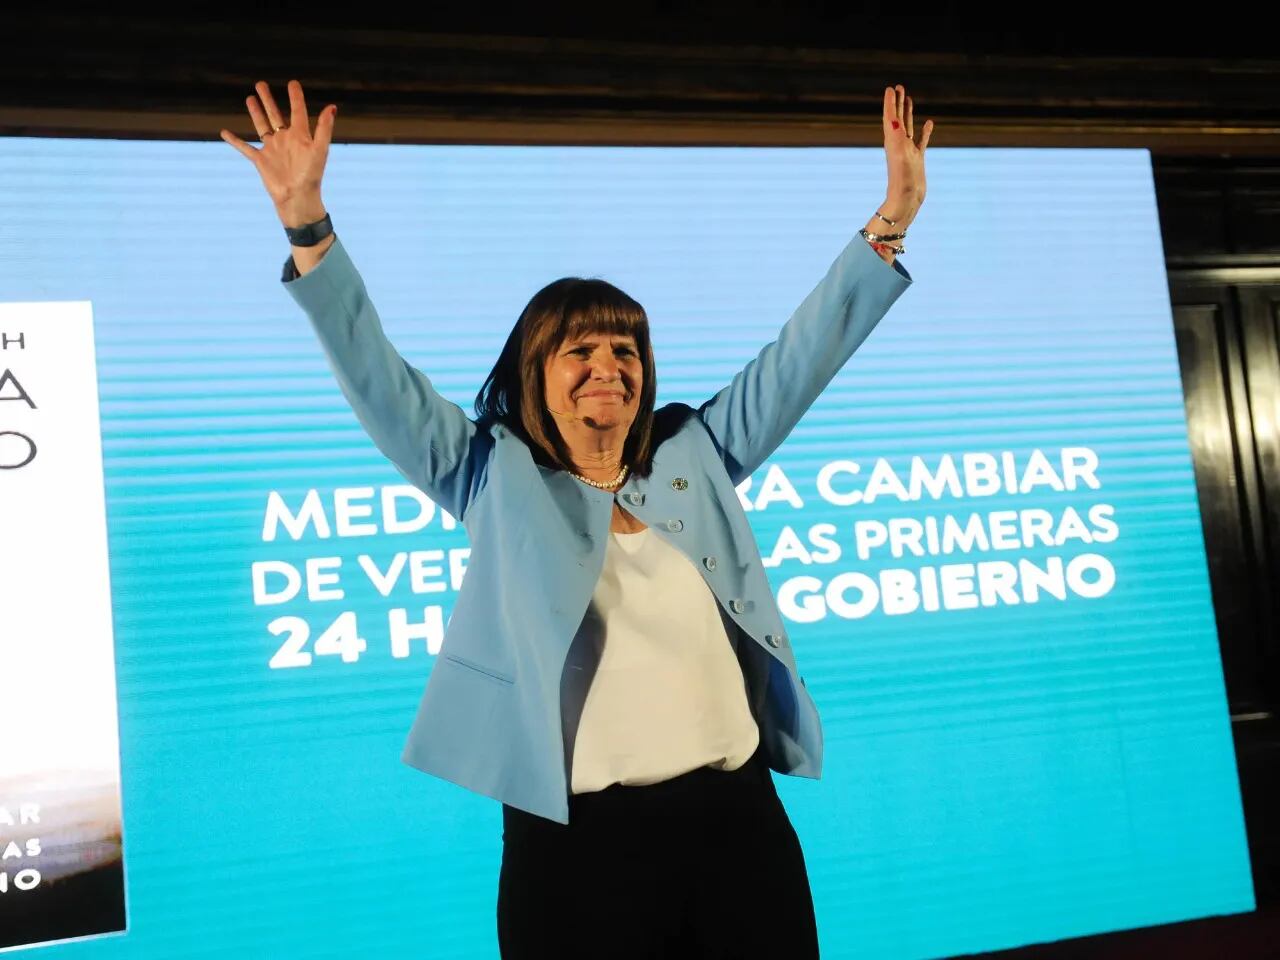 La candidata presidencial criticó al libertario por querer sumar a Mauricio Macri a su espacio, en caso de ganar las elecciones. “Que no se cuelgue de un fuerza política que no le pertenece”. 